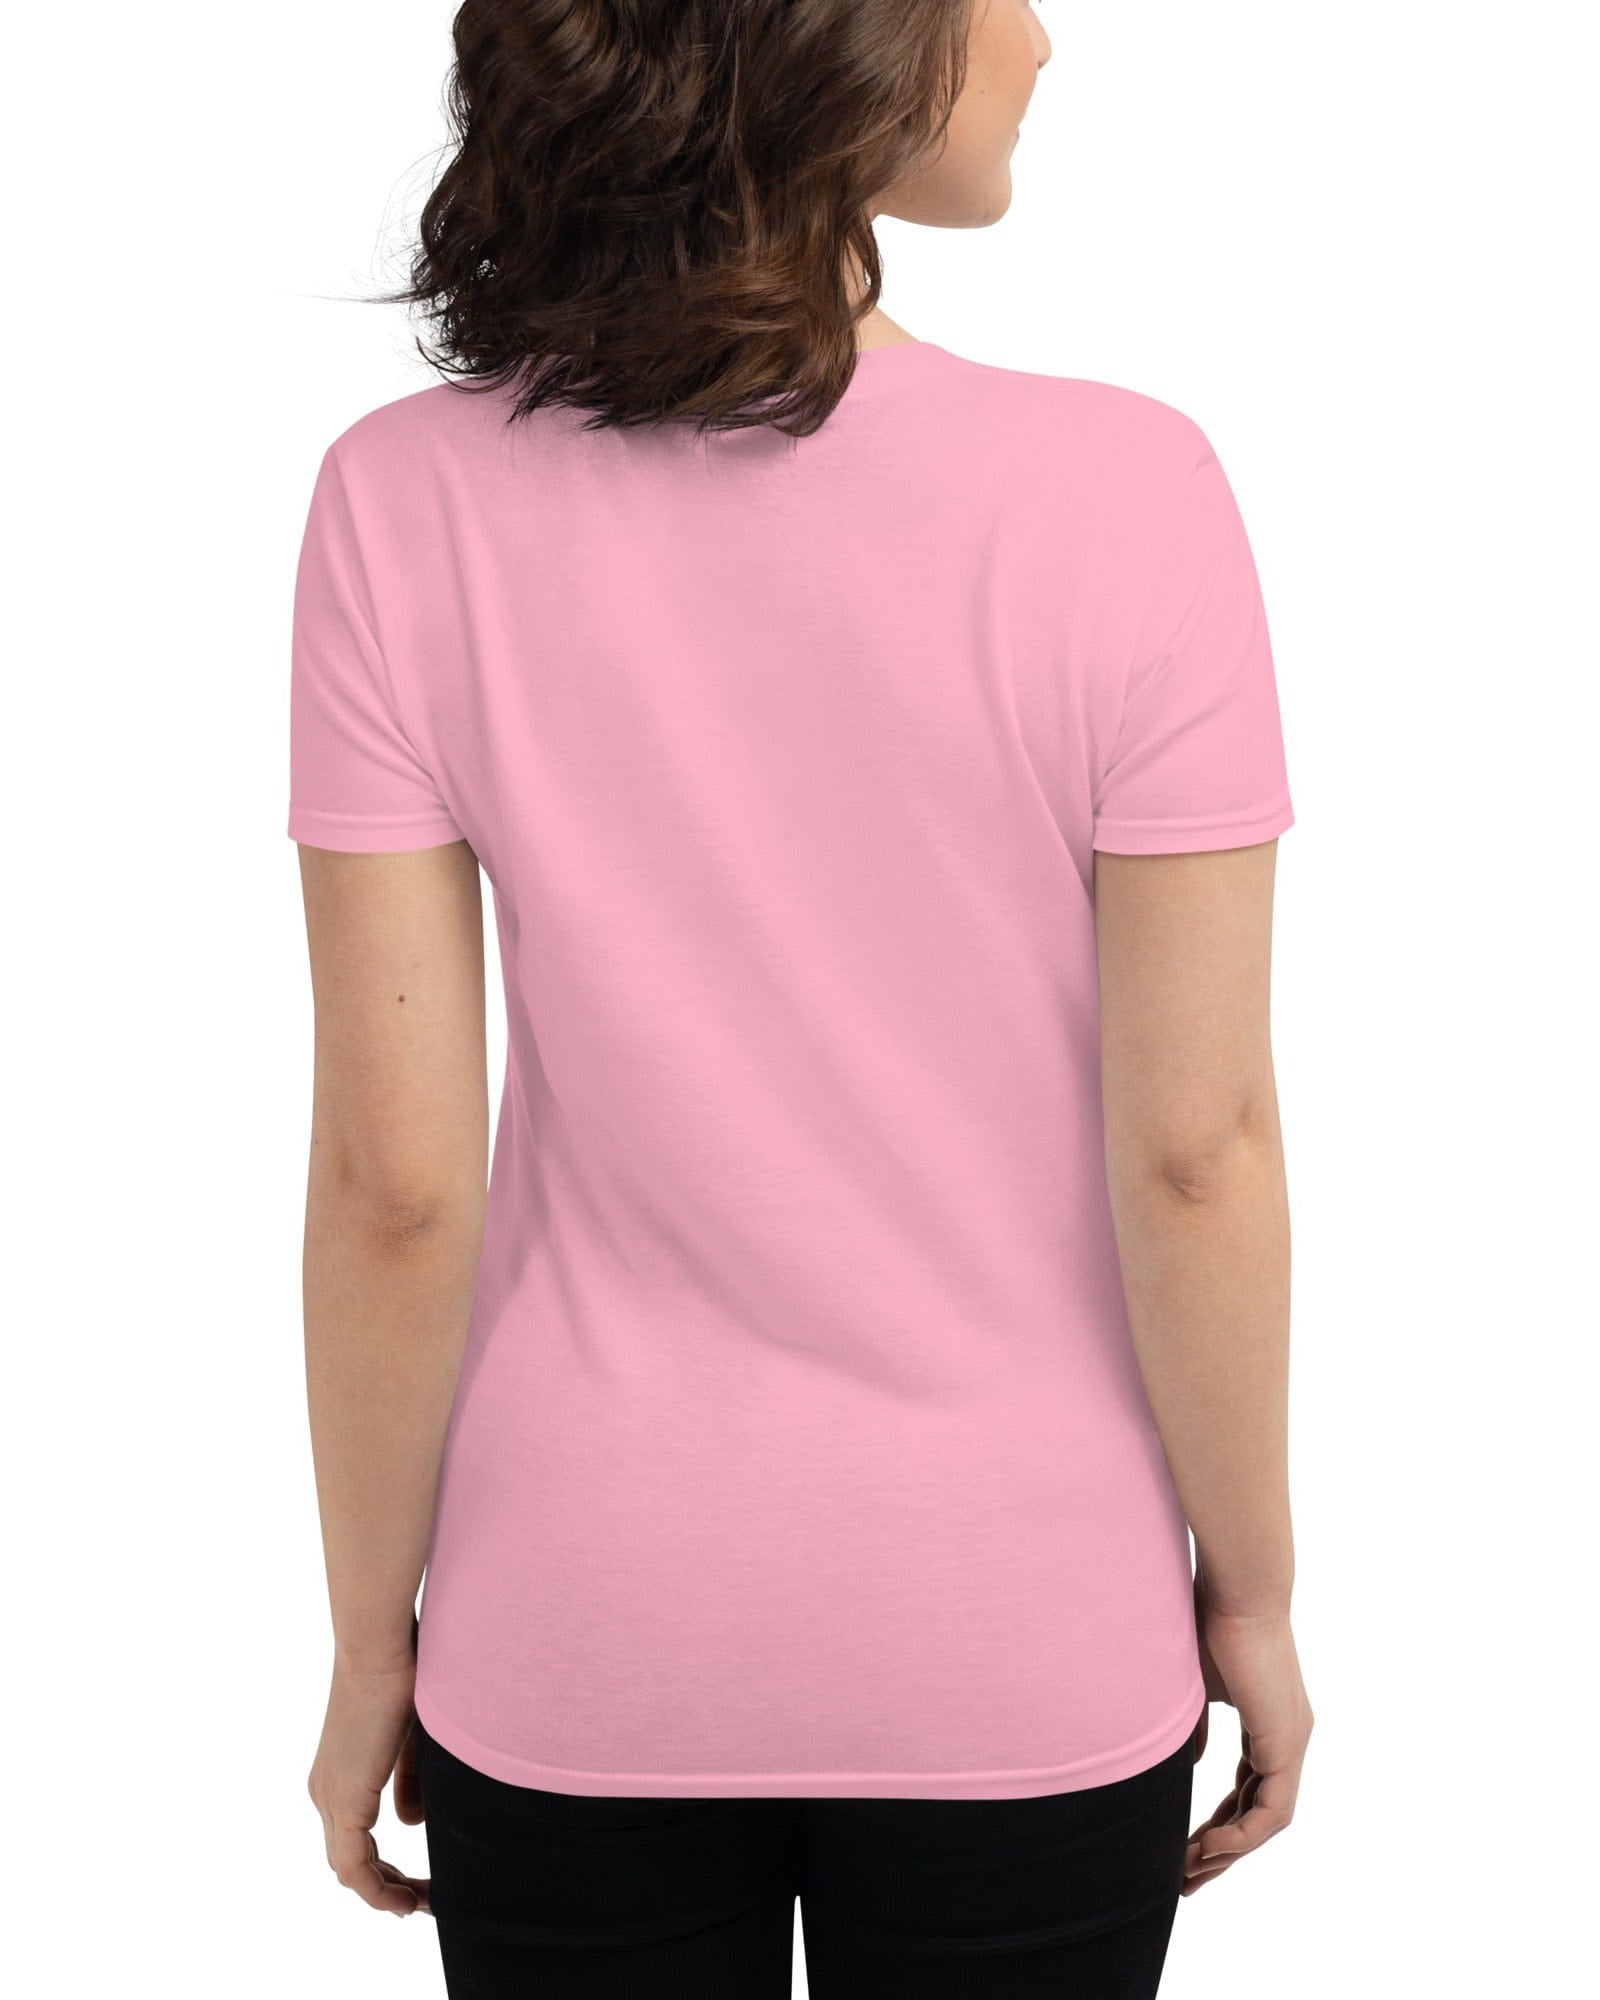 River Exe Women's Short-Sleeve T-shirt | Exeter Gift Shop Women's Shirts Jolly & Goode